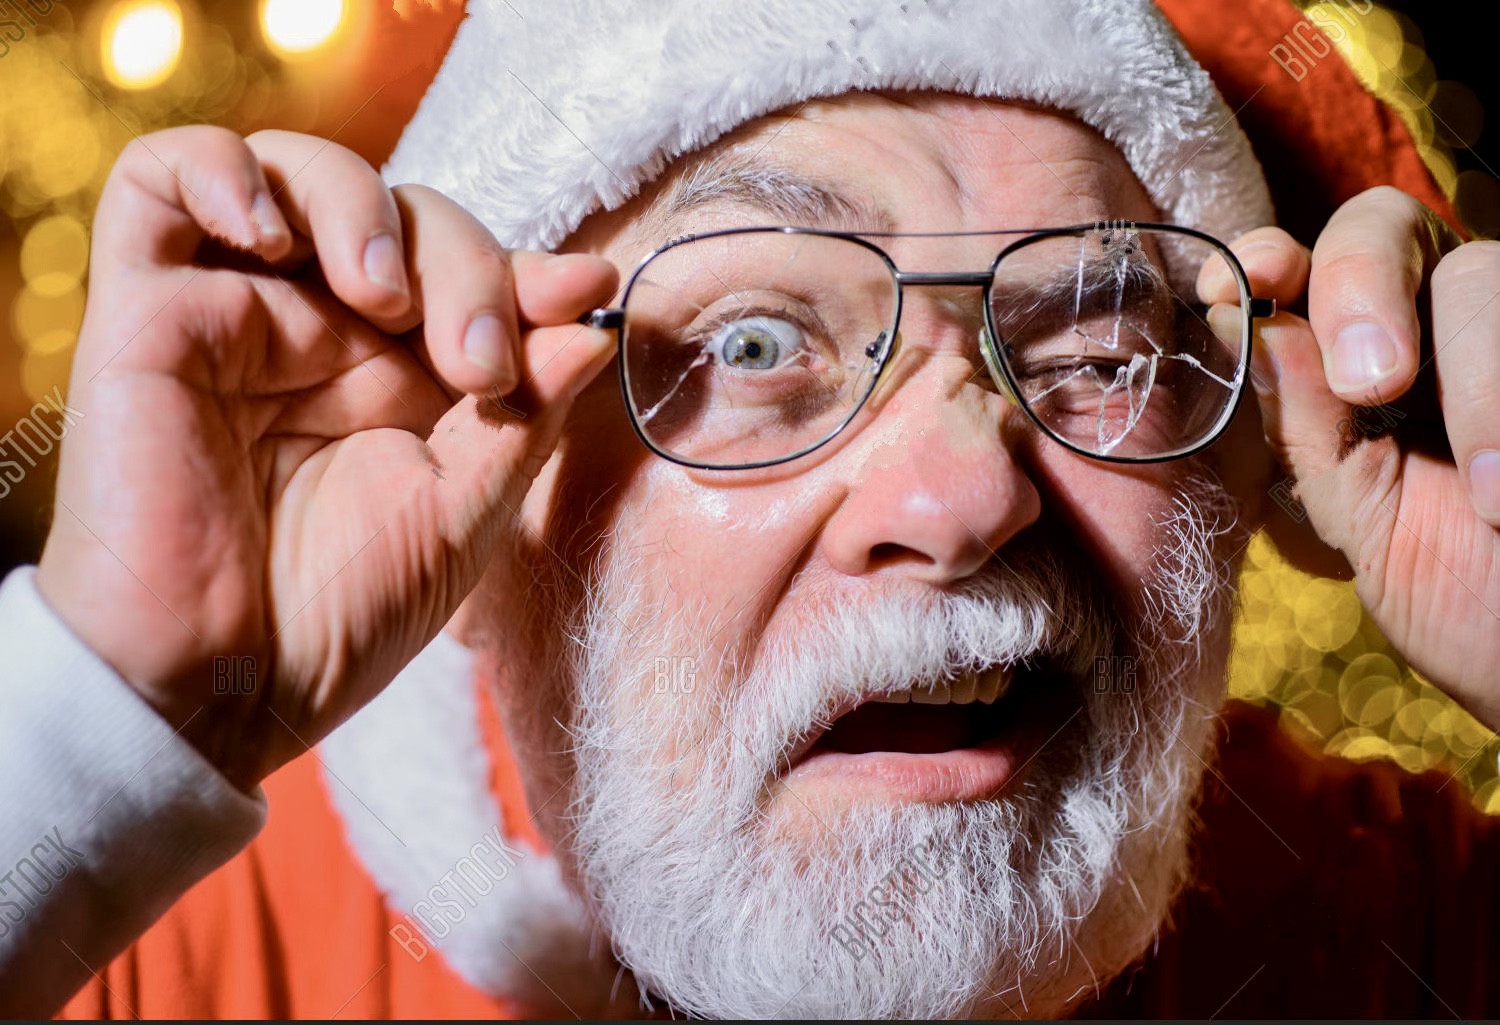 Psihologie: NU Moș Crăciun te pune să golești cardul, ci publicitatea agresivă